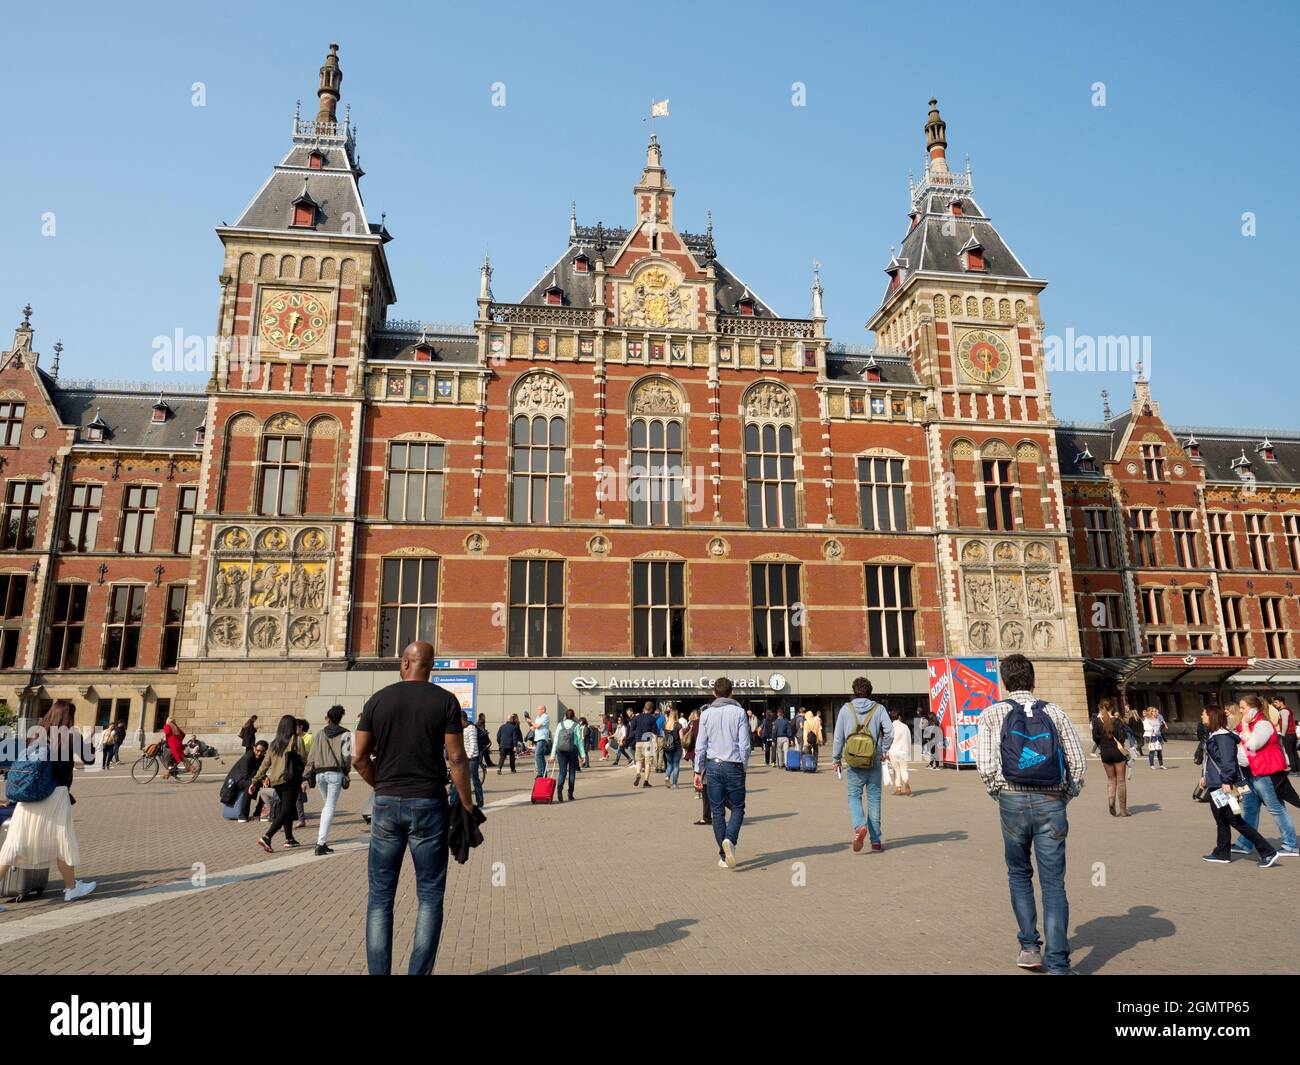 Amsterdam, Niederlande - 27. Mai 2016; Amsterdam ist die Hauptstadt von NetherlandsÕ und berühmt für ihr künstlerisches Erbe, ihr malerisches Kanalsystem und ihr schmal anriges Hou Stockfoto